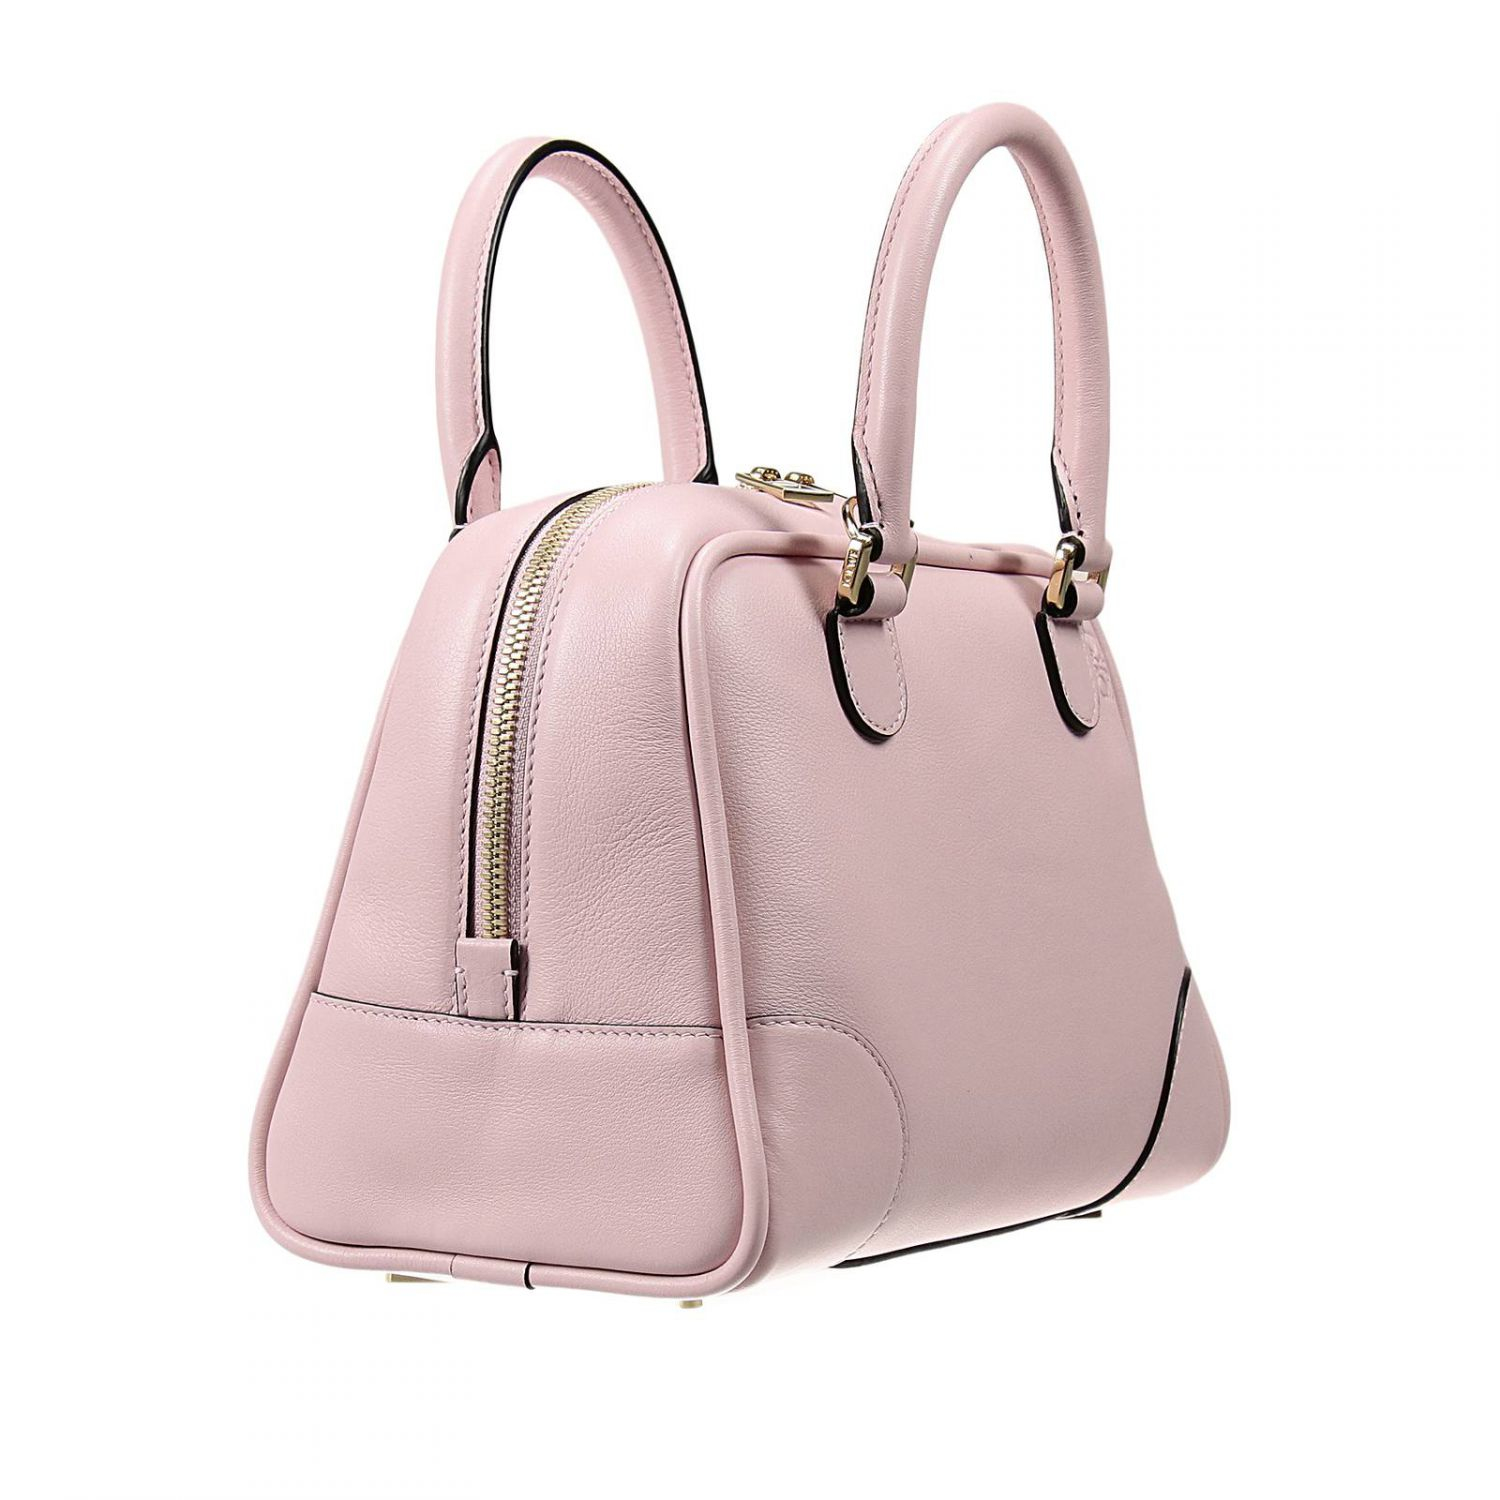 Lyst - Loewe Handbag Amazona Small Leather in Pink